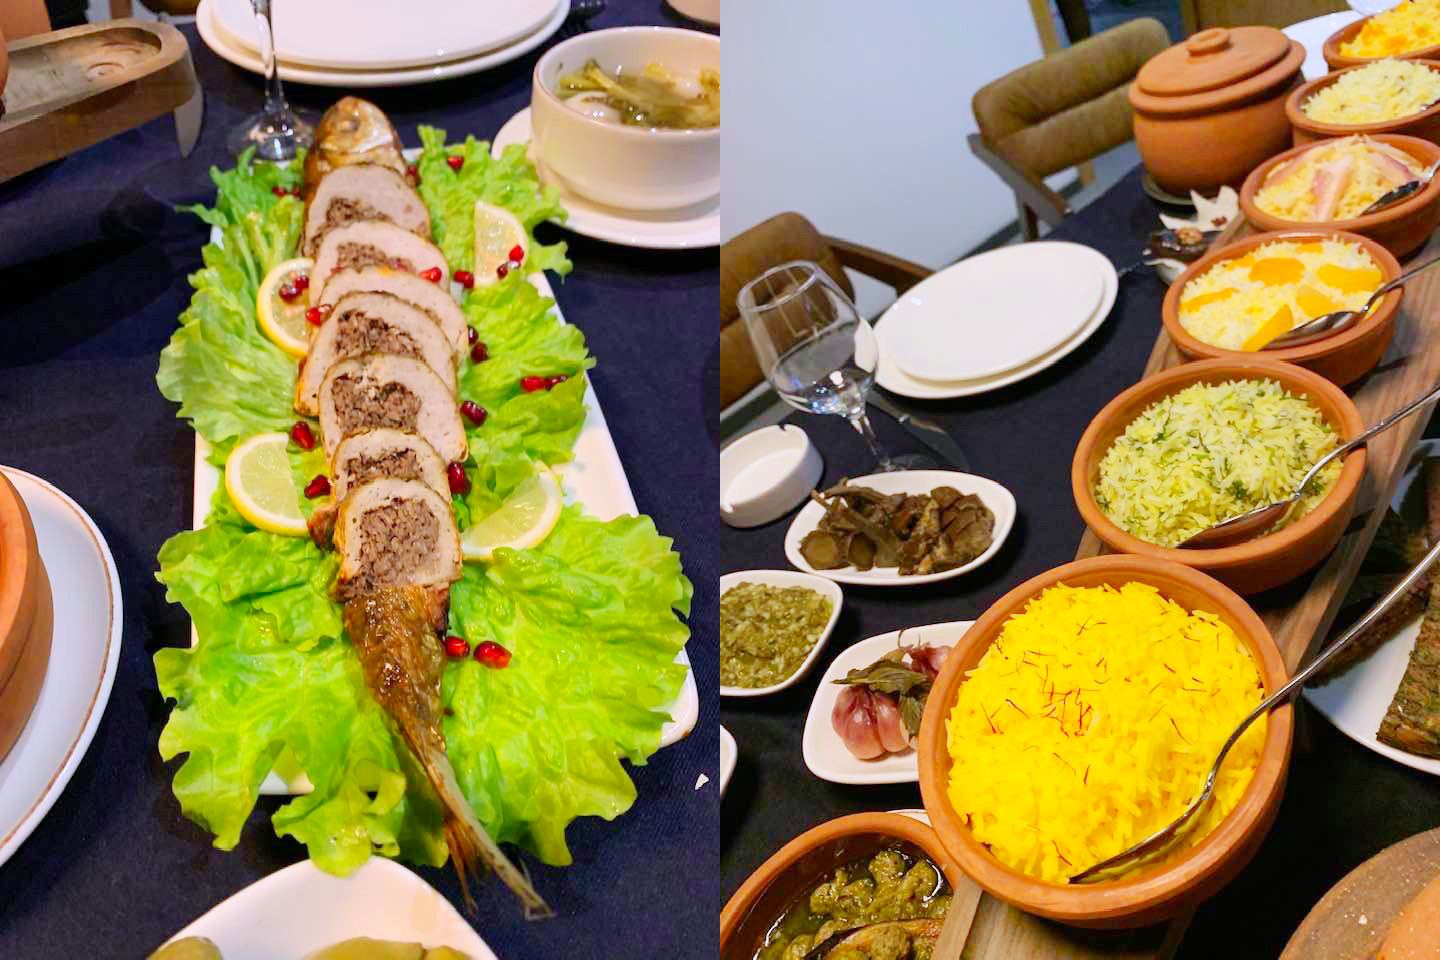 В Баку проходит месячник лянкяранской кухни - удивительные блюда с бесподобным вкусом (ФОТО)